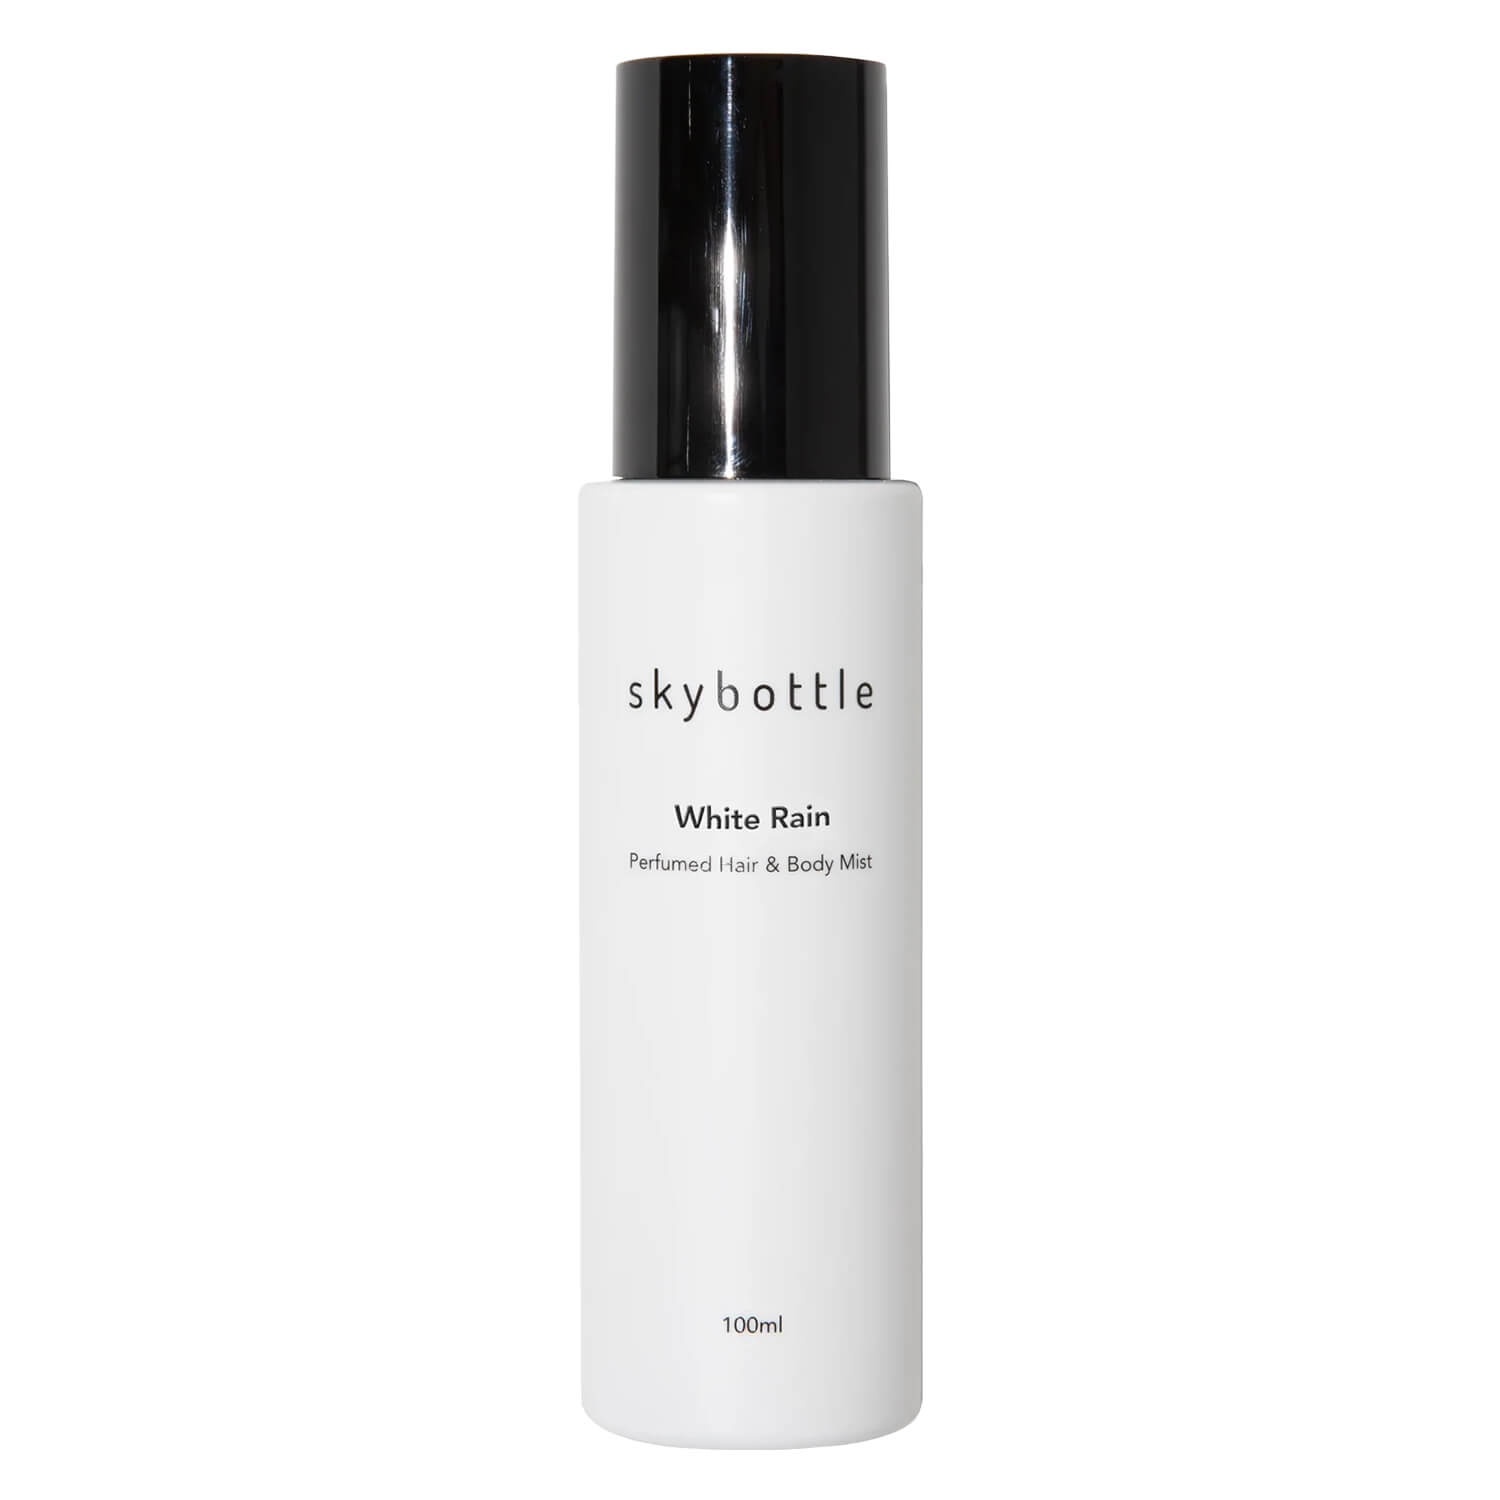 Produktbild von Skybottle - White Rain Perfumed Hair & Body Mist